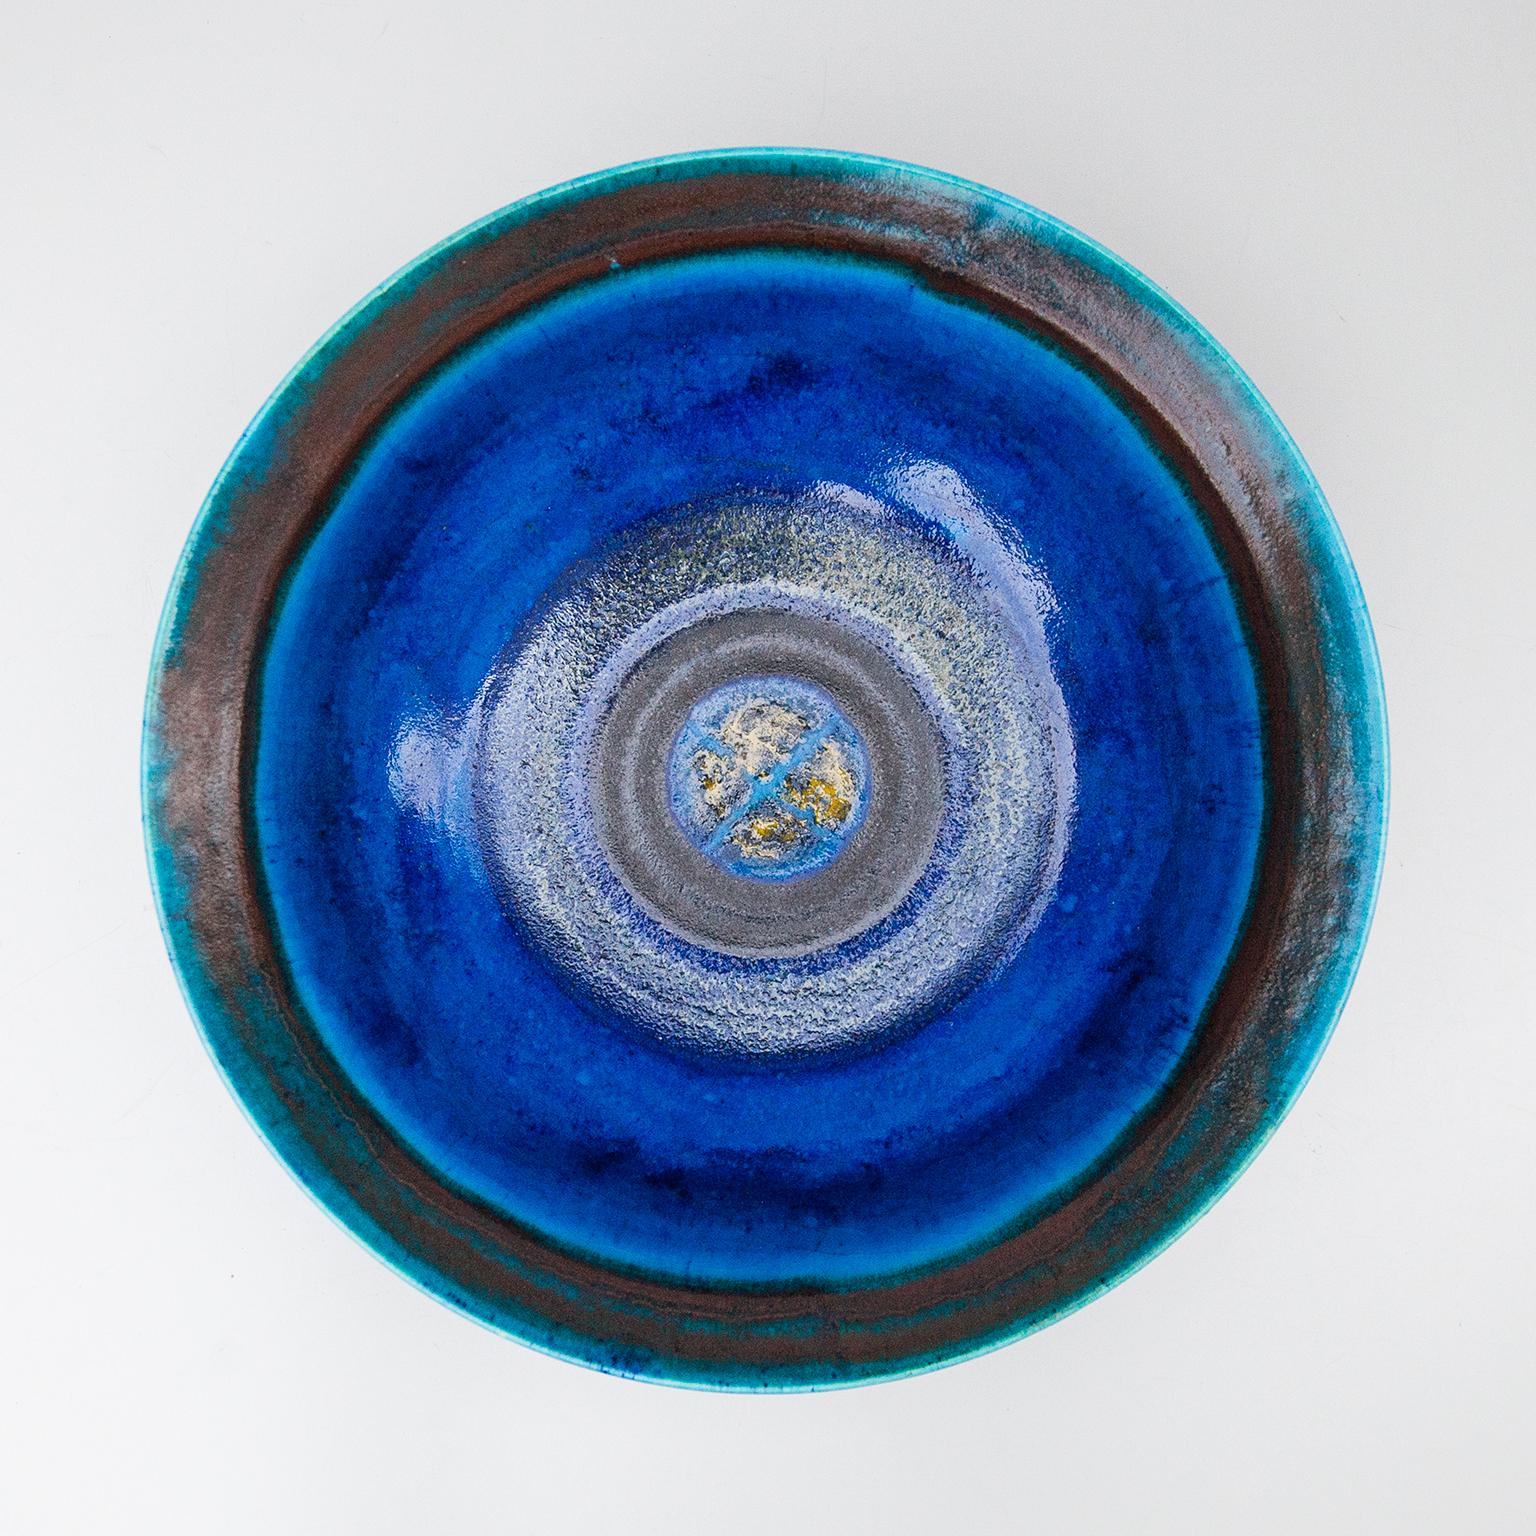 Grand bol coloré en céramique émaillée bleue, gris foncé et dorée réalisé par Bruno Gambone dans les années 1970, signé Gambone Italie sur le fond.